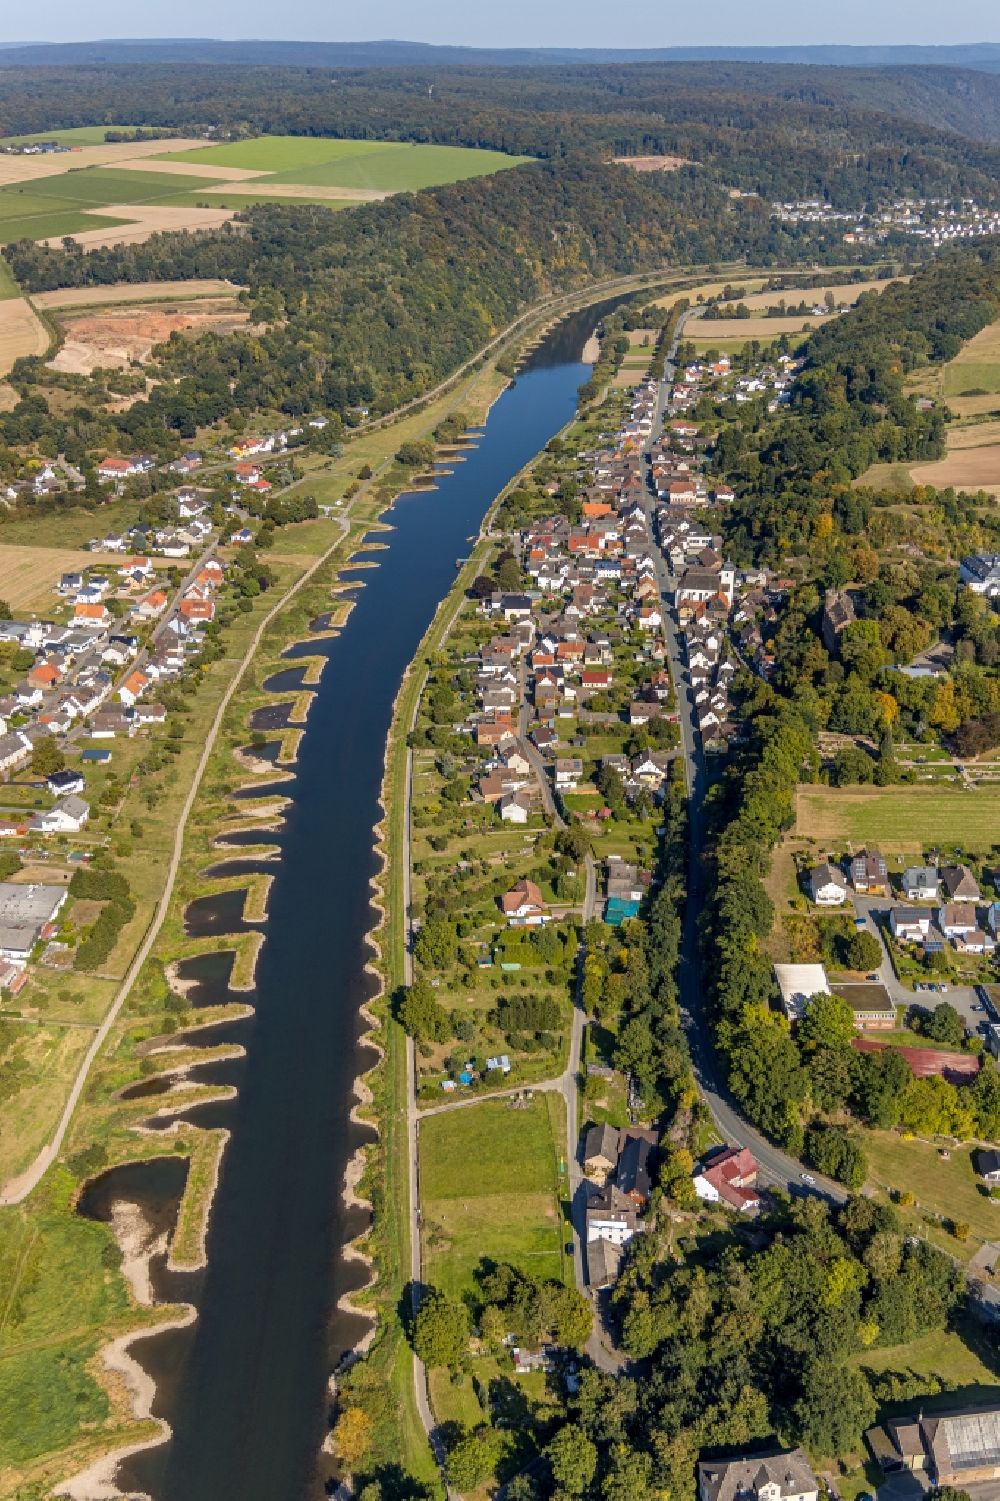 Herstelle aus der Vogelperspektive: Ortskern am Uferbereich des Weser - Flußverlaufes in Herstelle im Bundesland Nordrhein-Westfalen, Deutschland